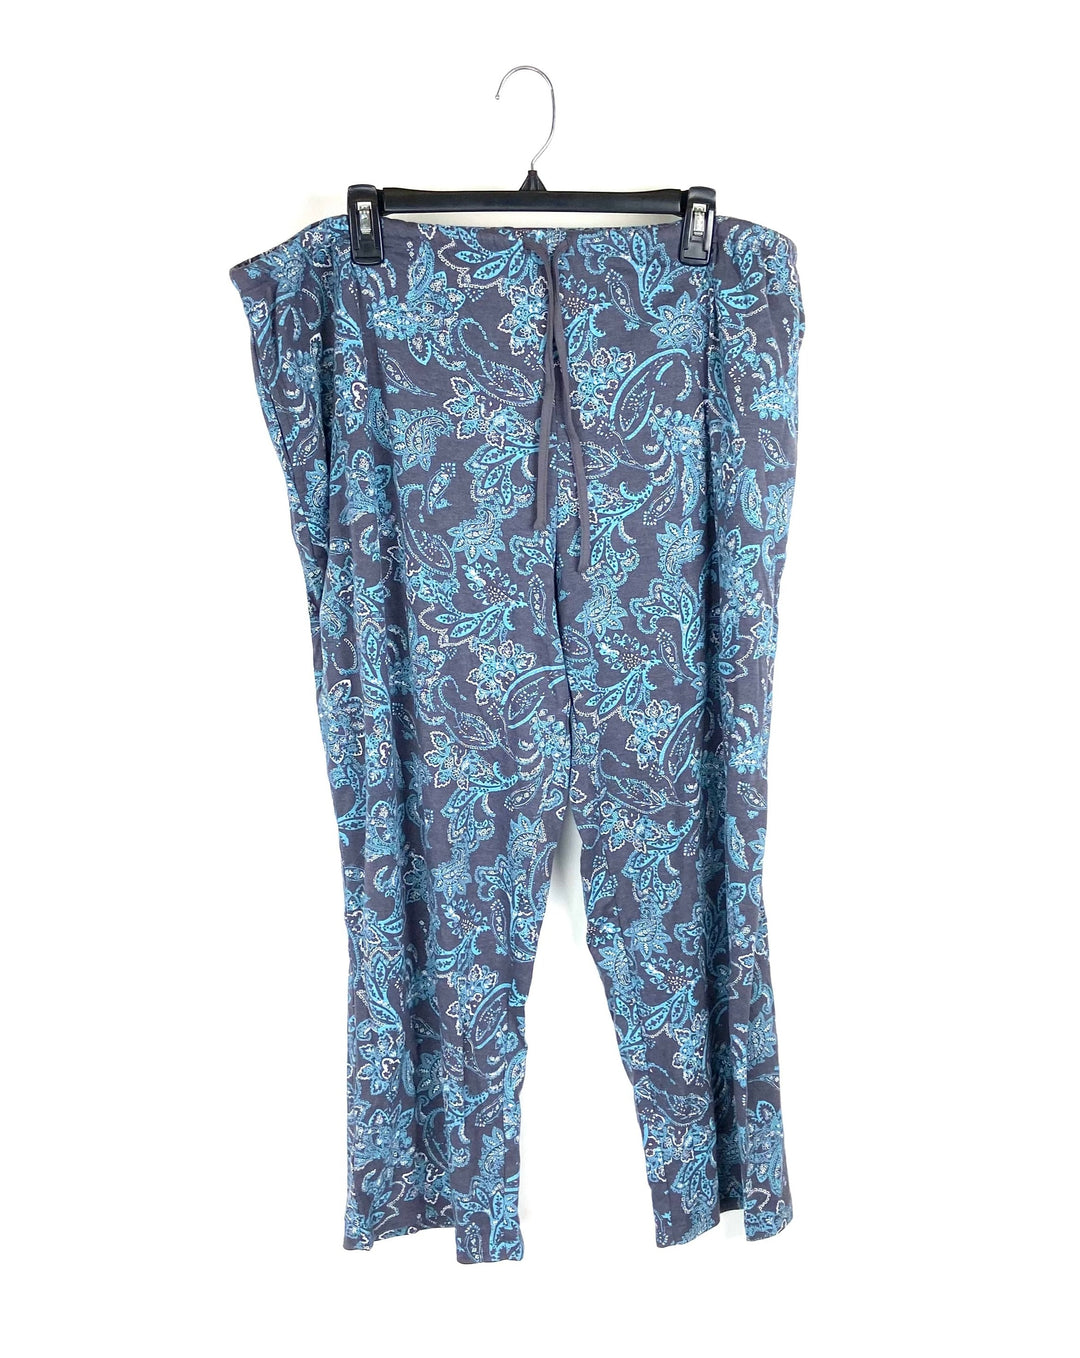 Dark Grey Copped Pajama Pants - Petite 1X